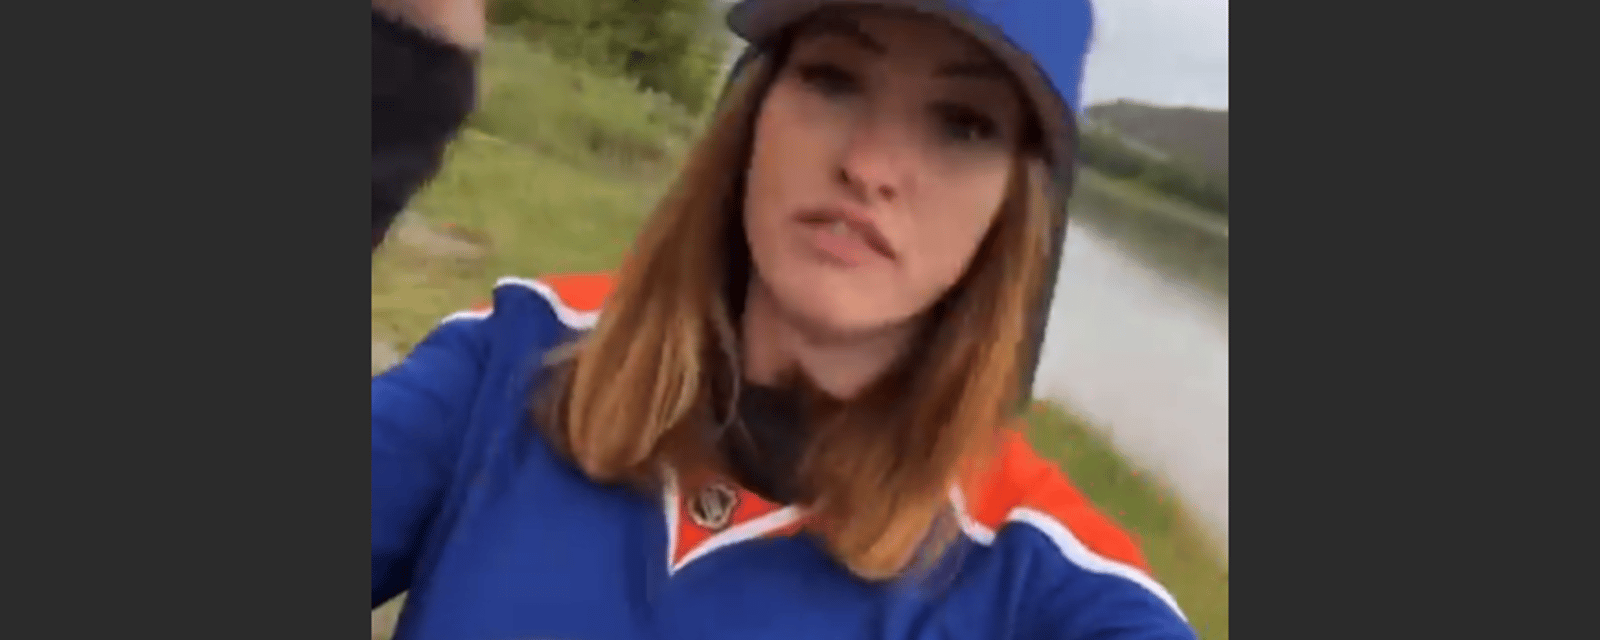 La “flasheuse” des Oilers devient virale une fois de plus avec une vidéo sur les médias sociaux